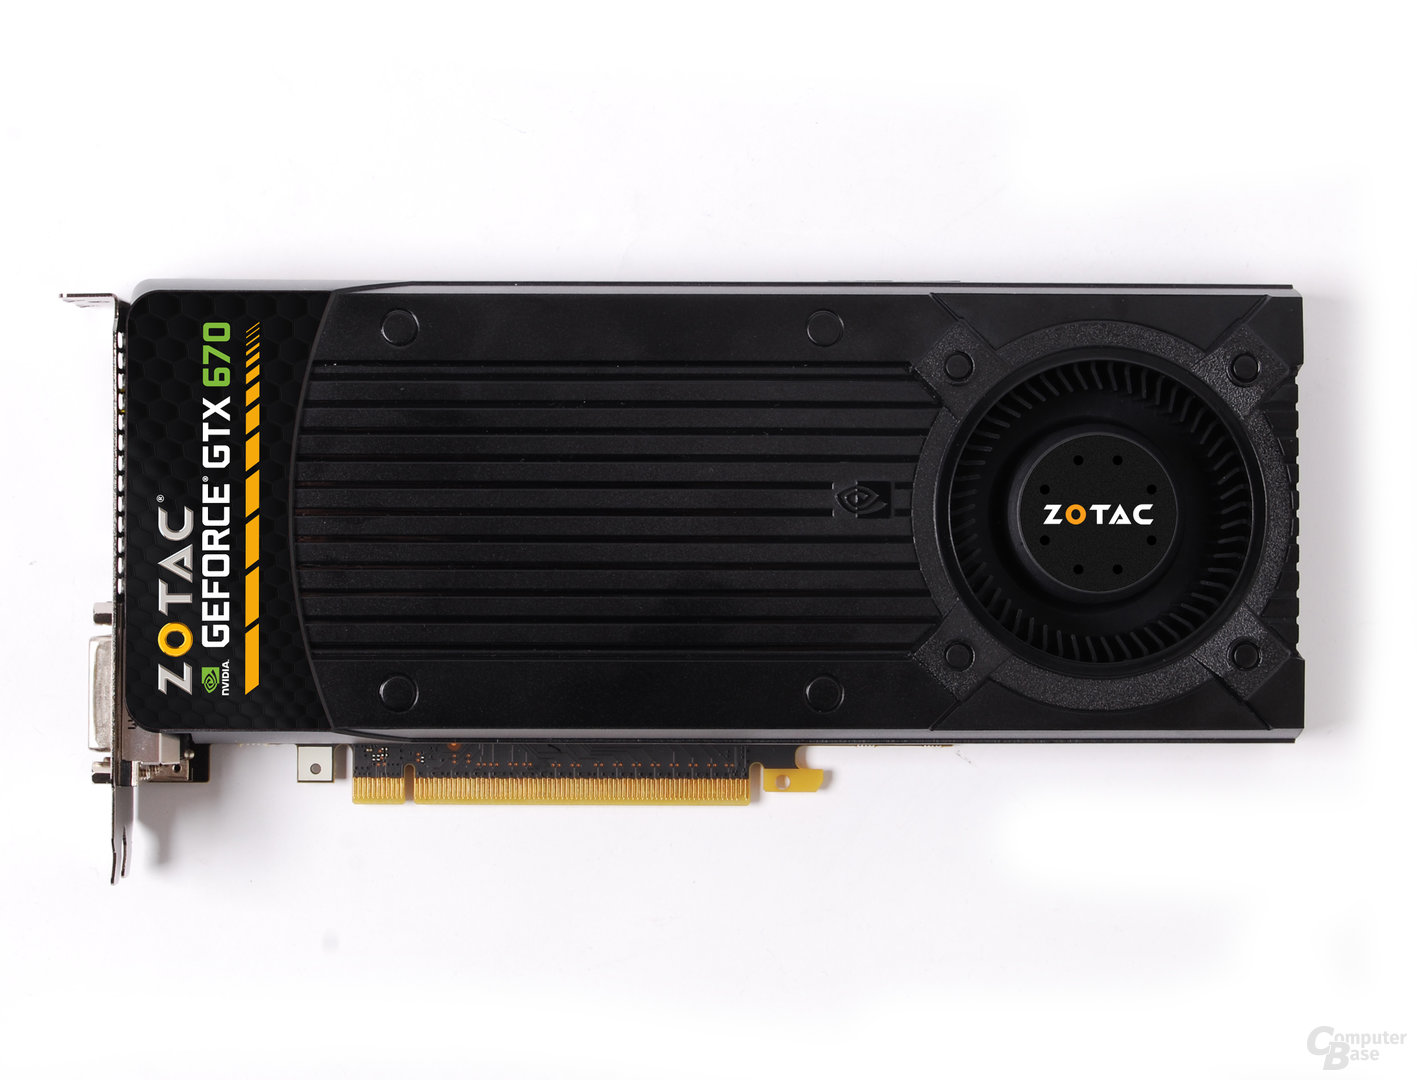 Zotac GeForce GTX 670